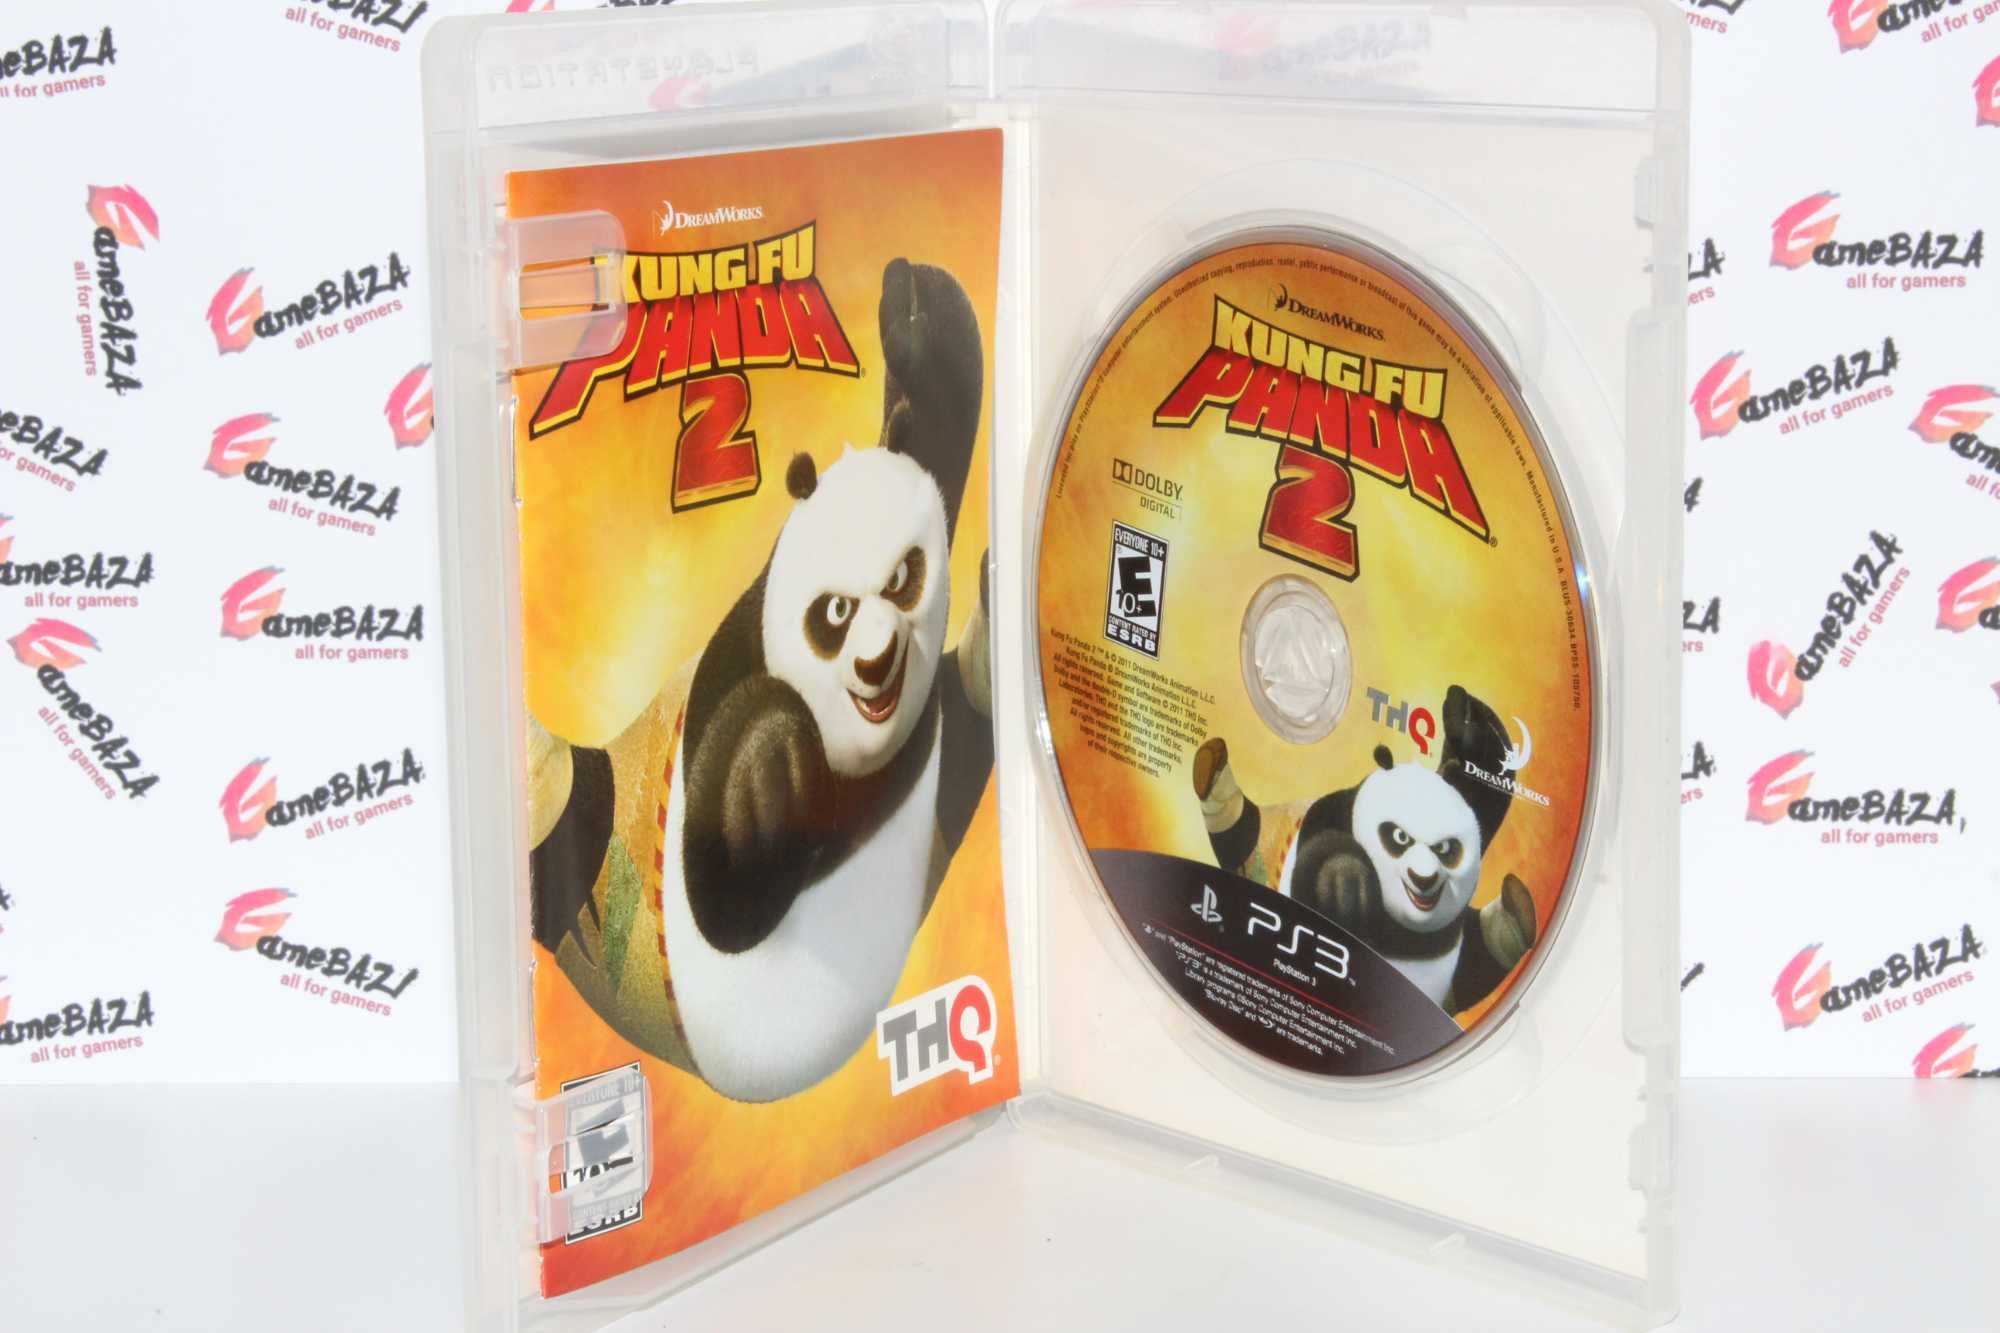 Kung Fu Panda 2 PS3 GameBAZA